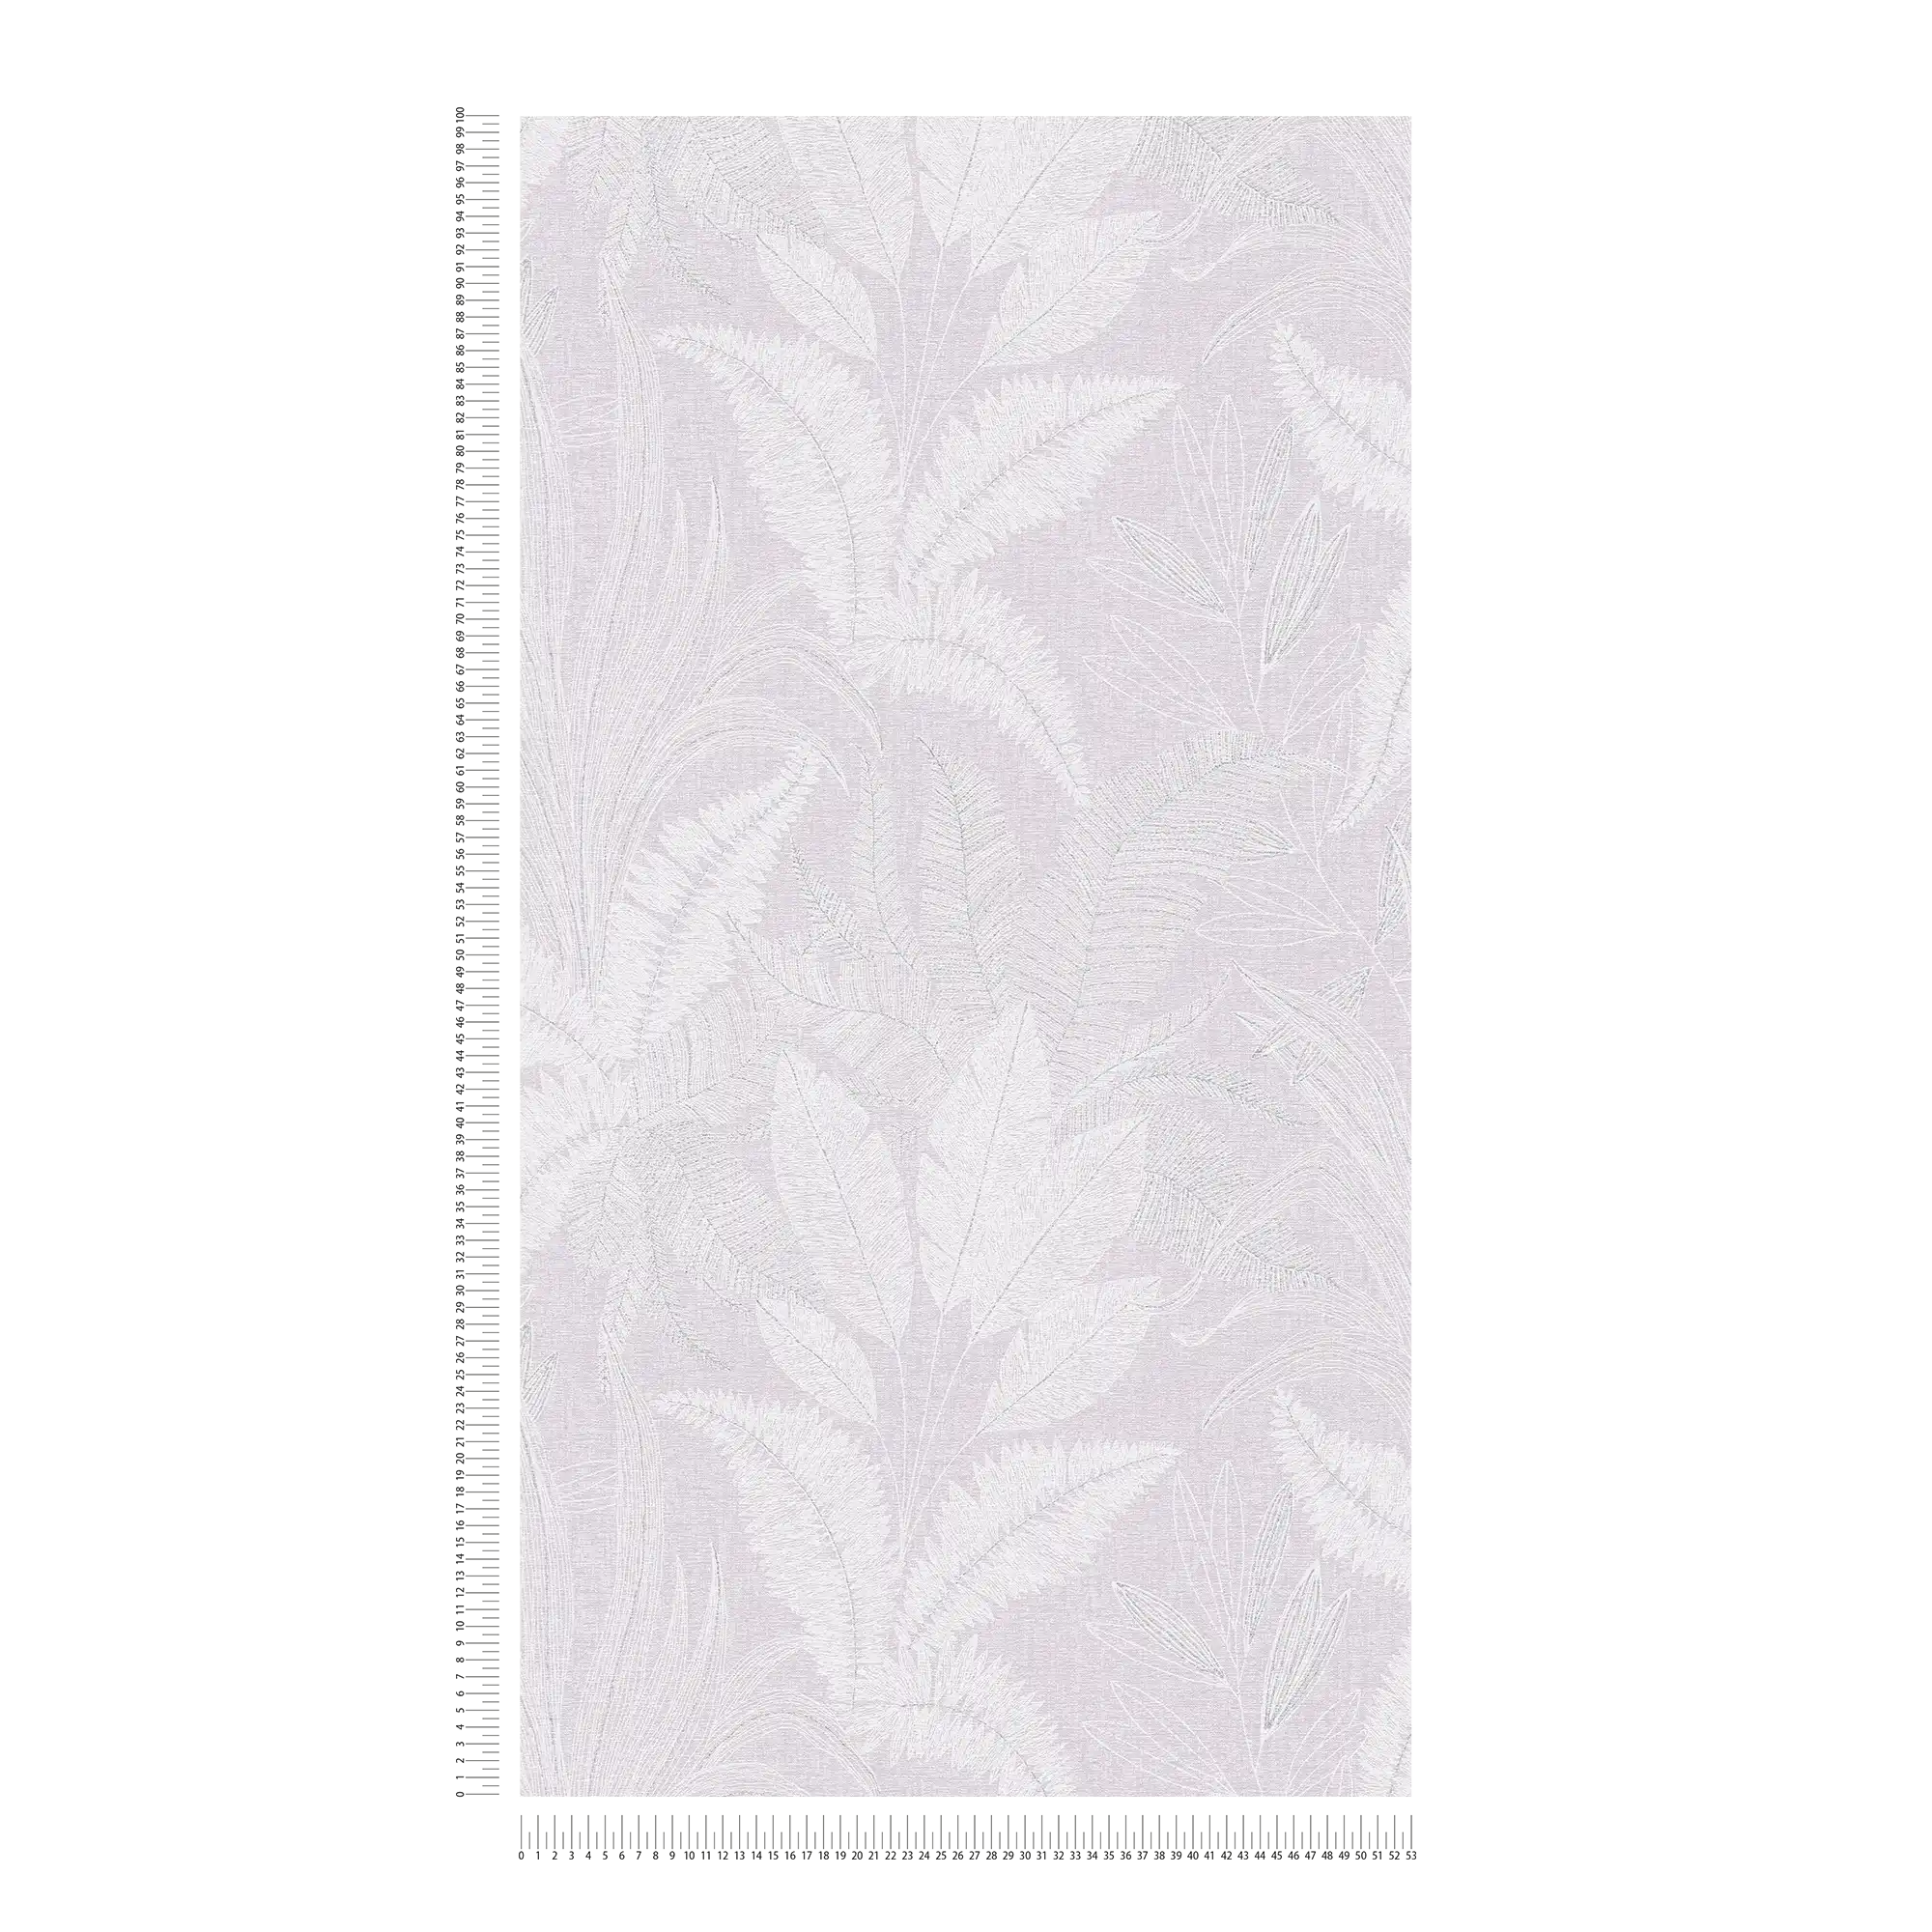             Carta da parati non tessuta con motivo a grandi foglie leggermente strutturato - viola, bianco, grigio
        